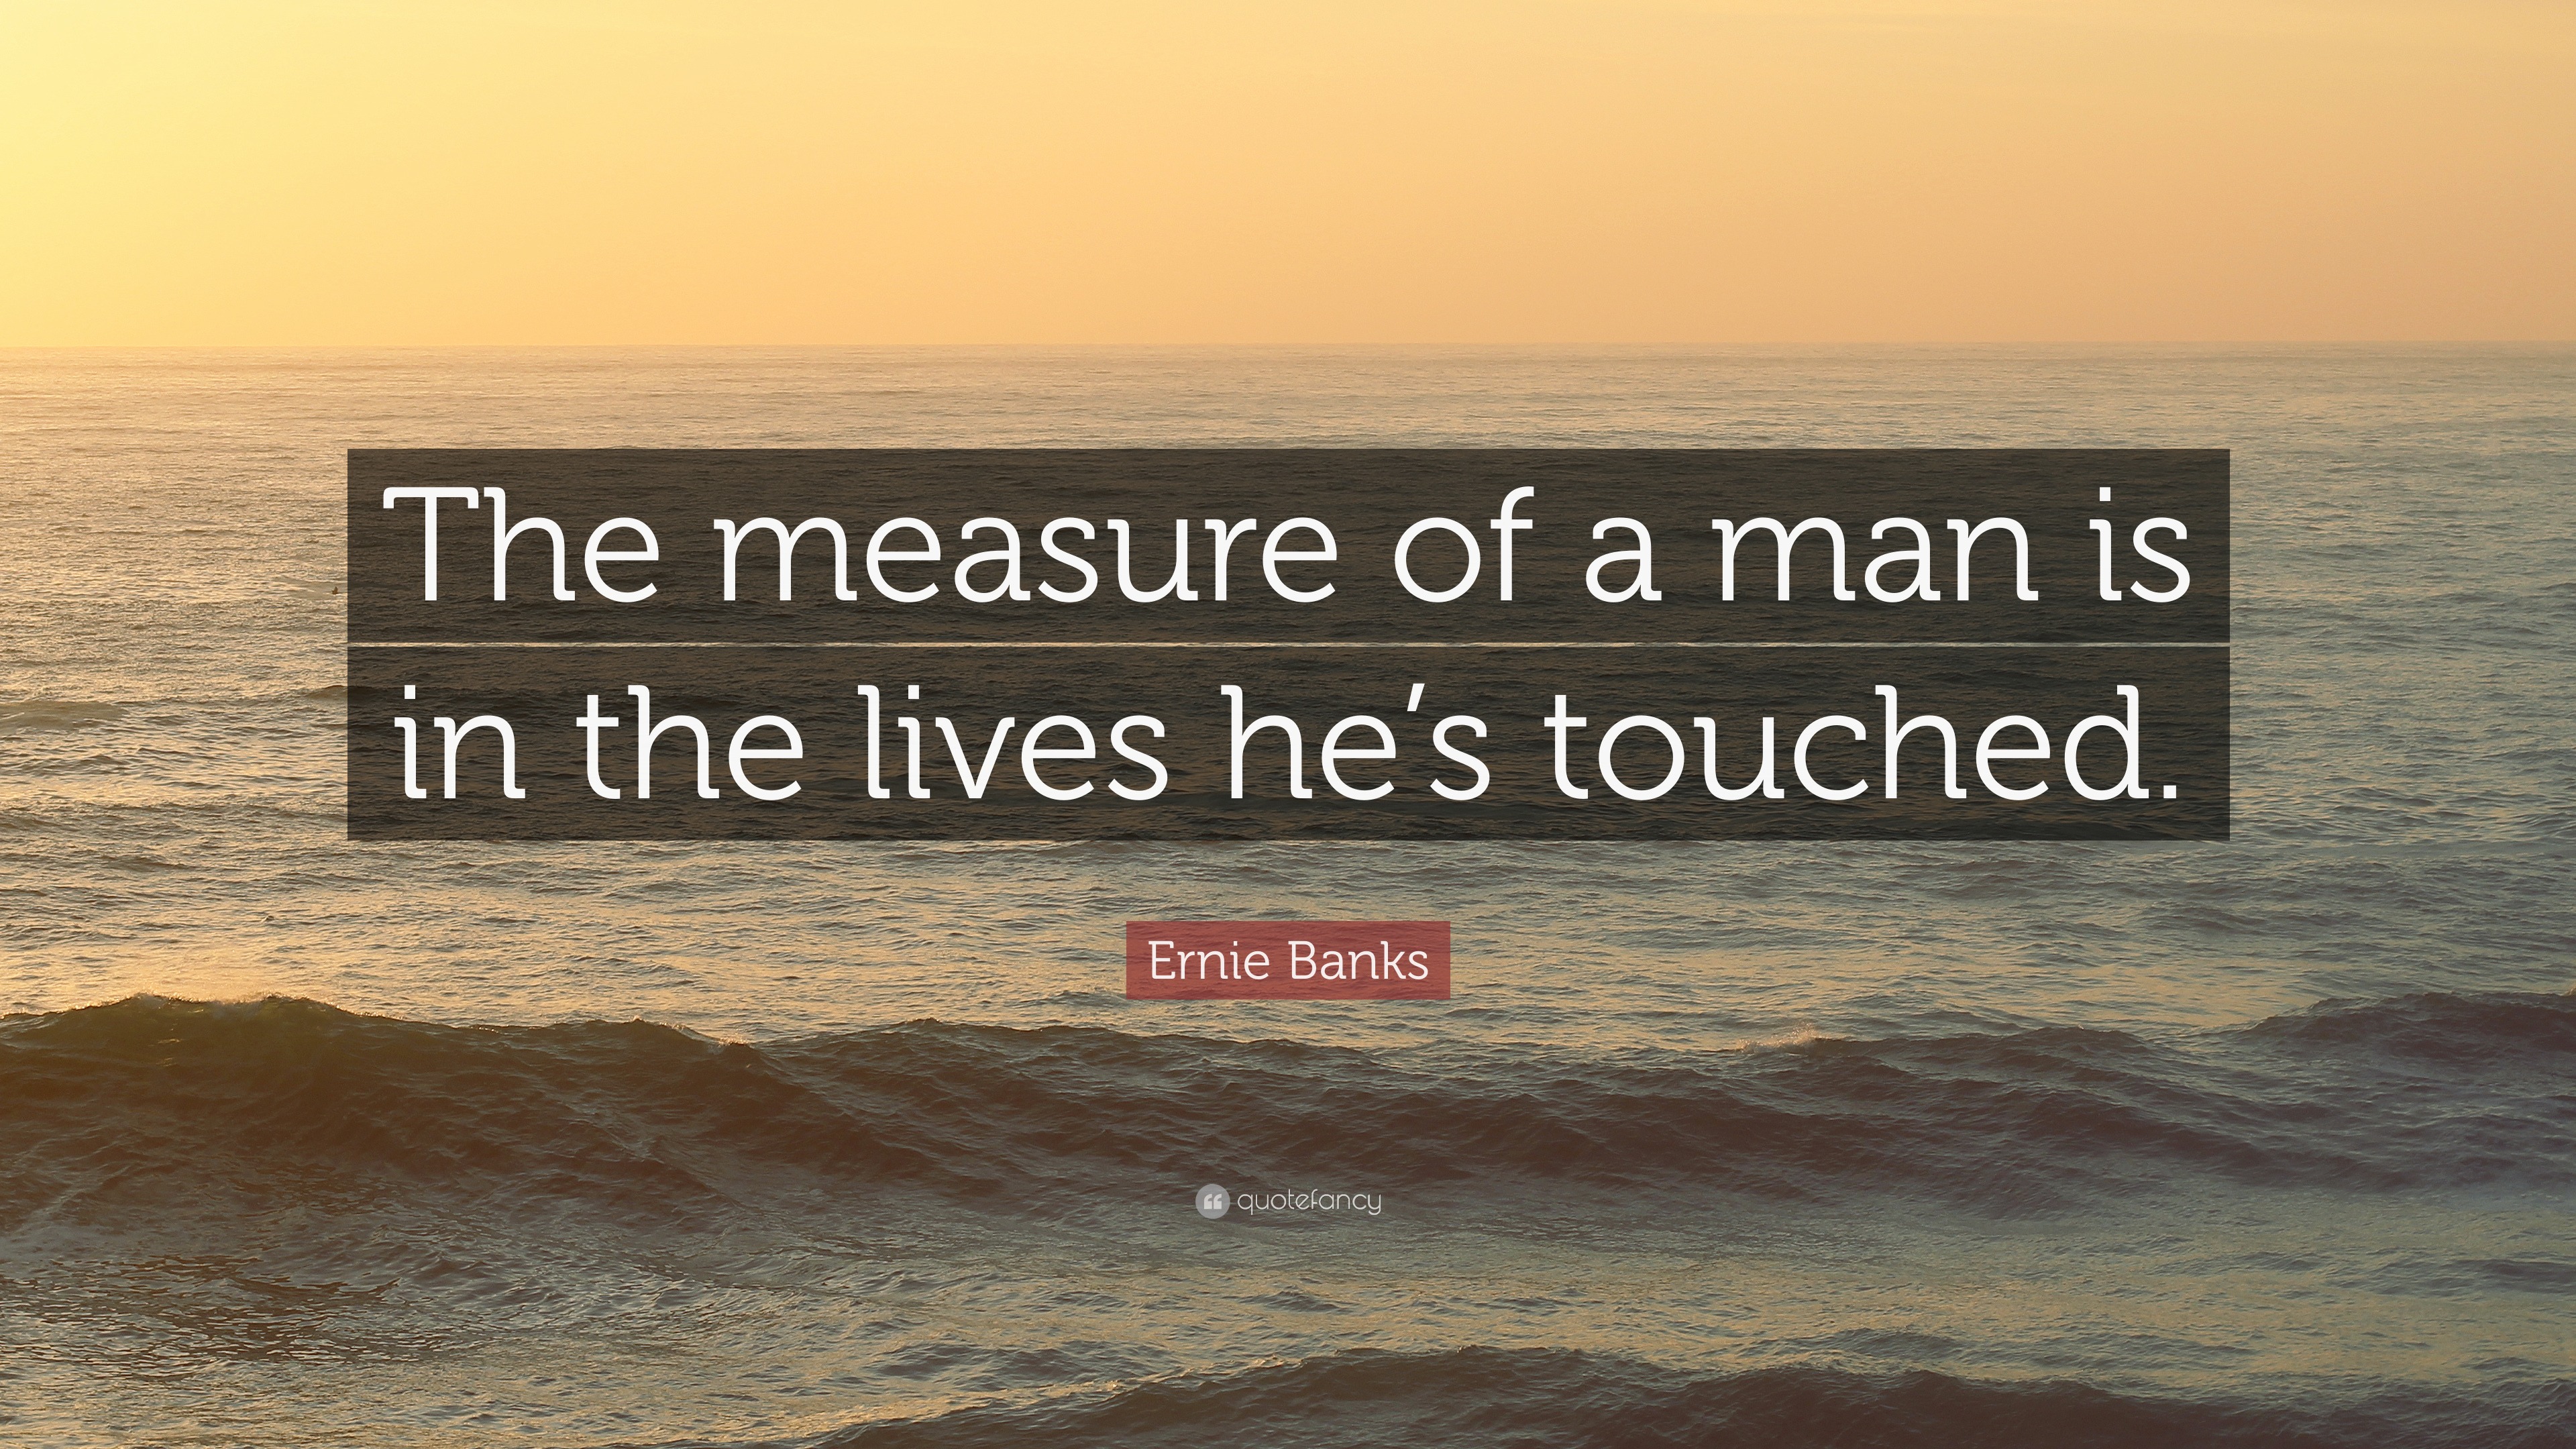 Top 15 Ernie Banks Quotes (2023 Update) - Quotefancy